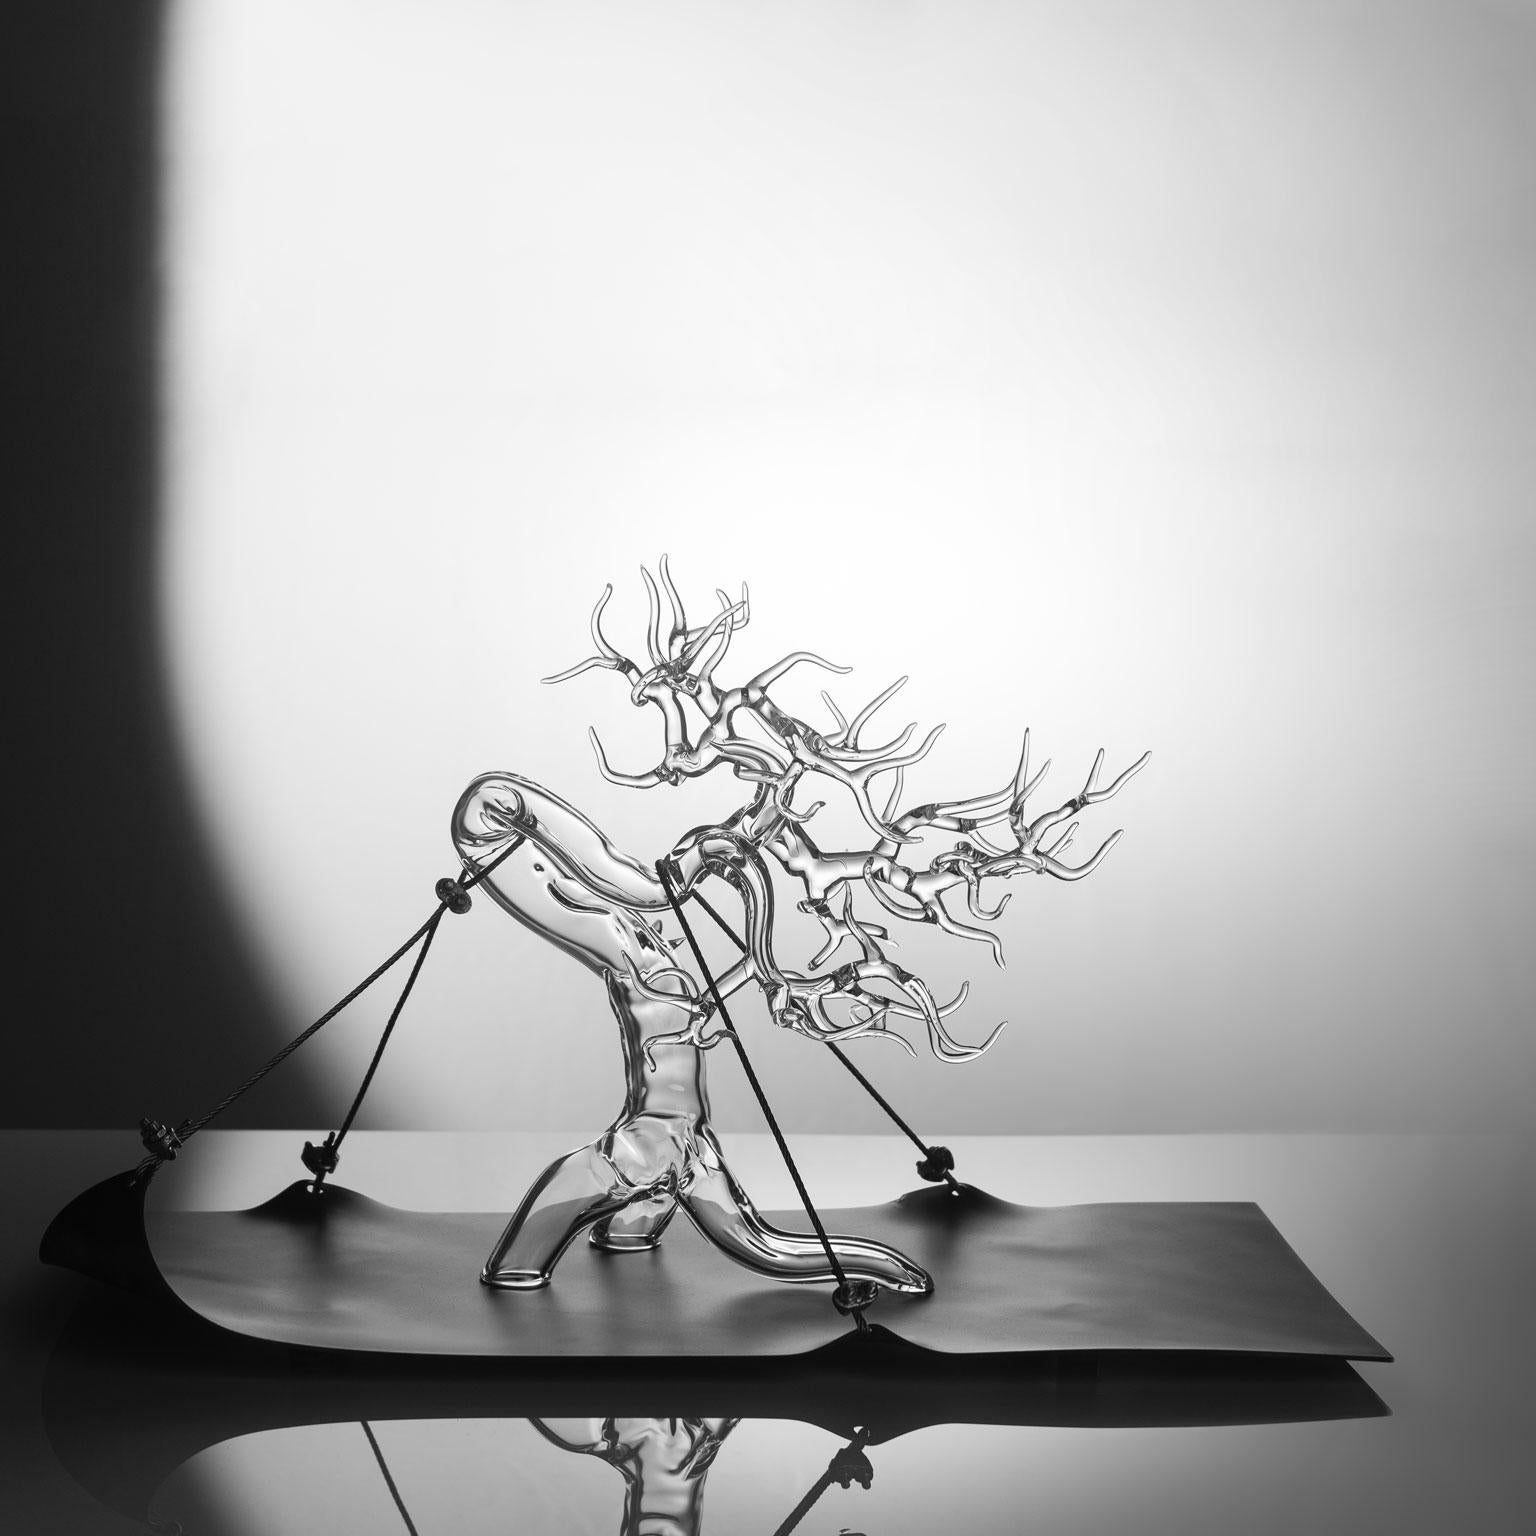 Tensione Esetica 2023 #01
Hand-blown glass sculpture by Simone Crestani.

